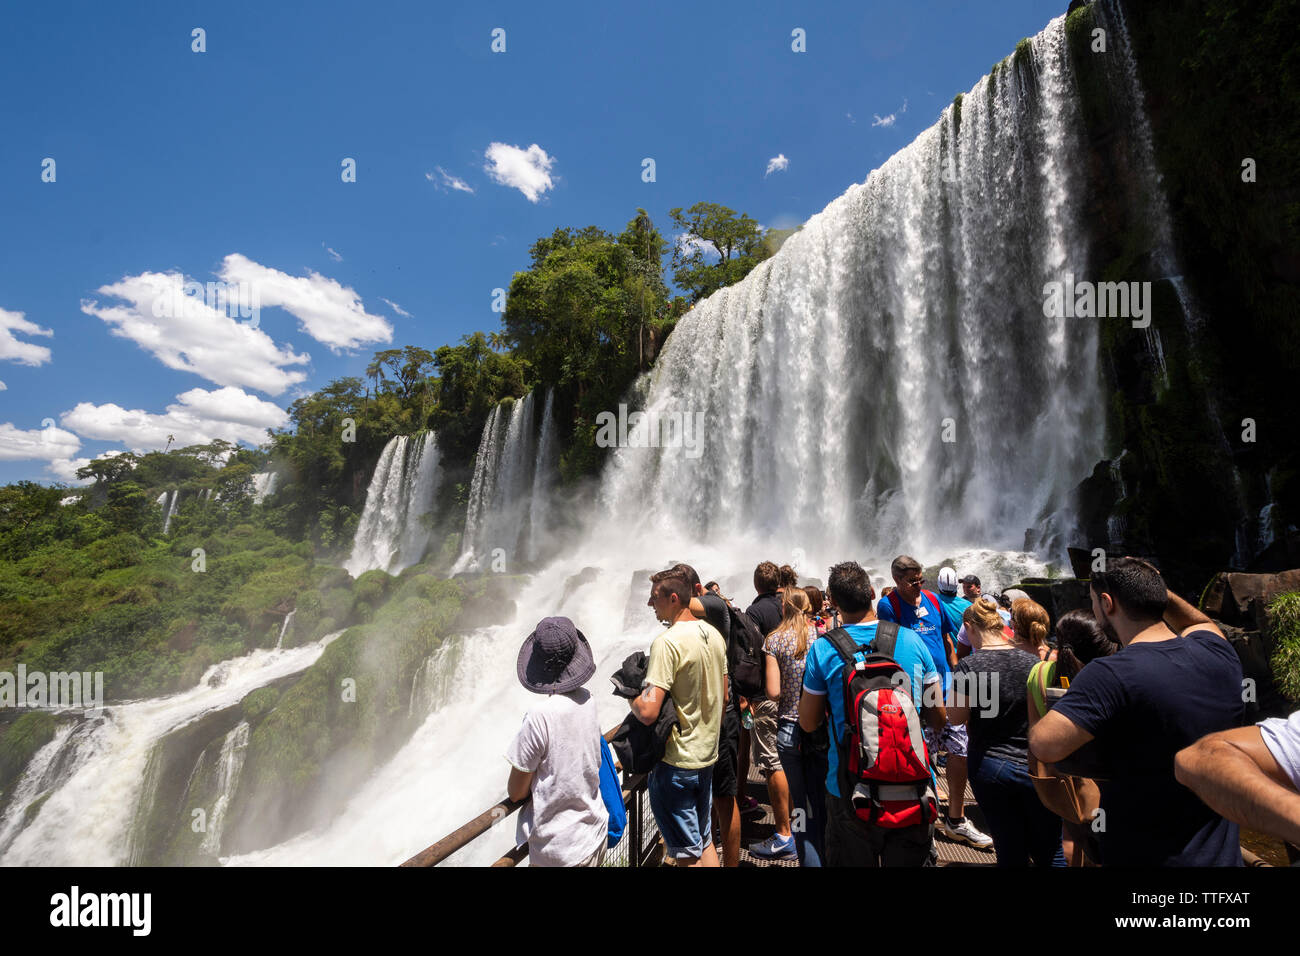 Tourists enjoying beautiful landscape of big waterfalls Stock Photo